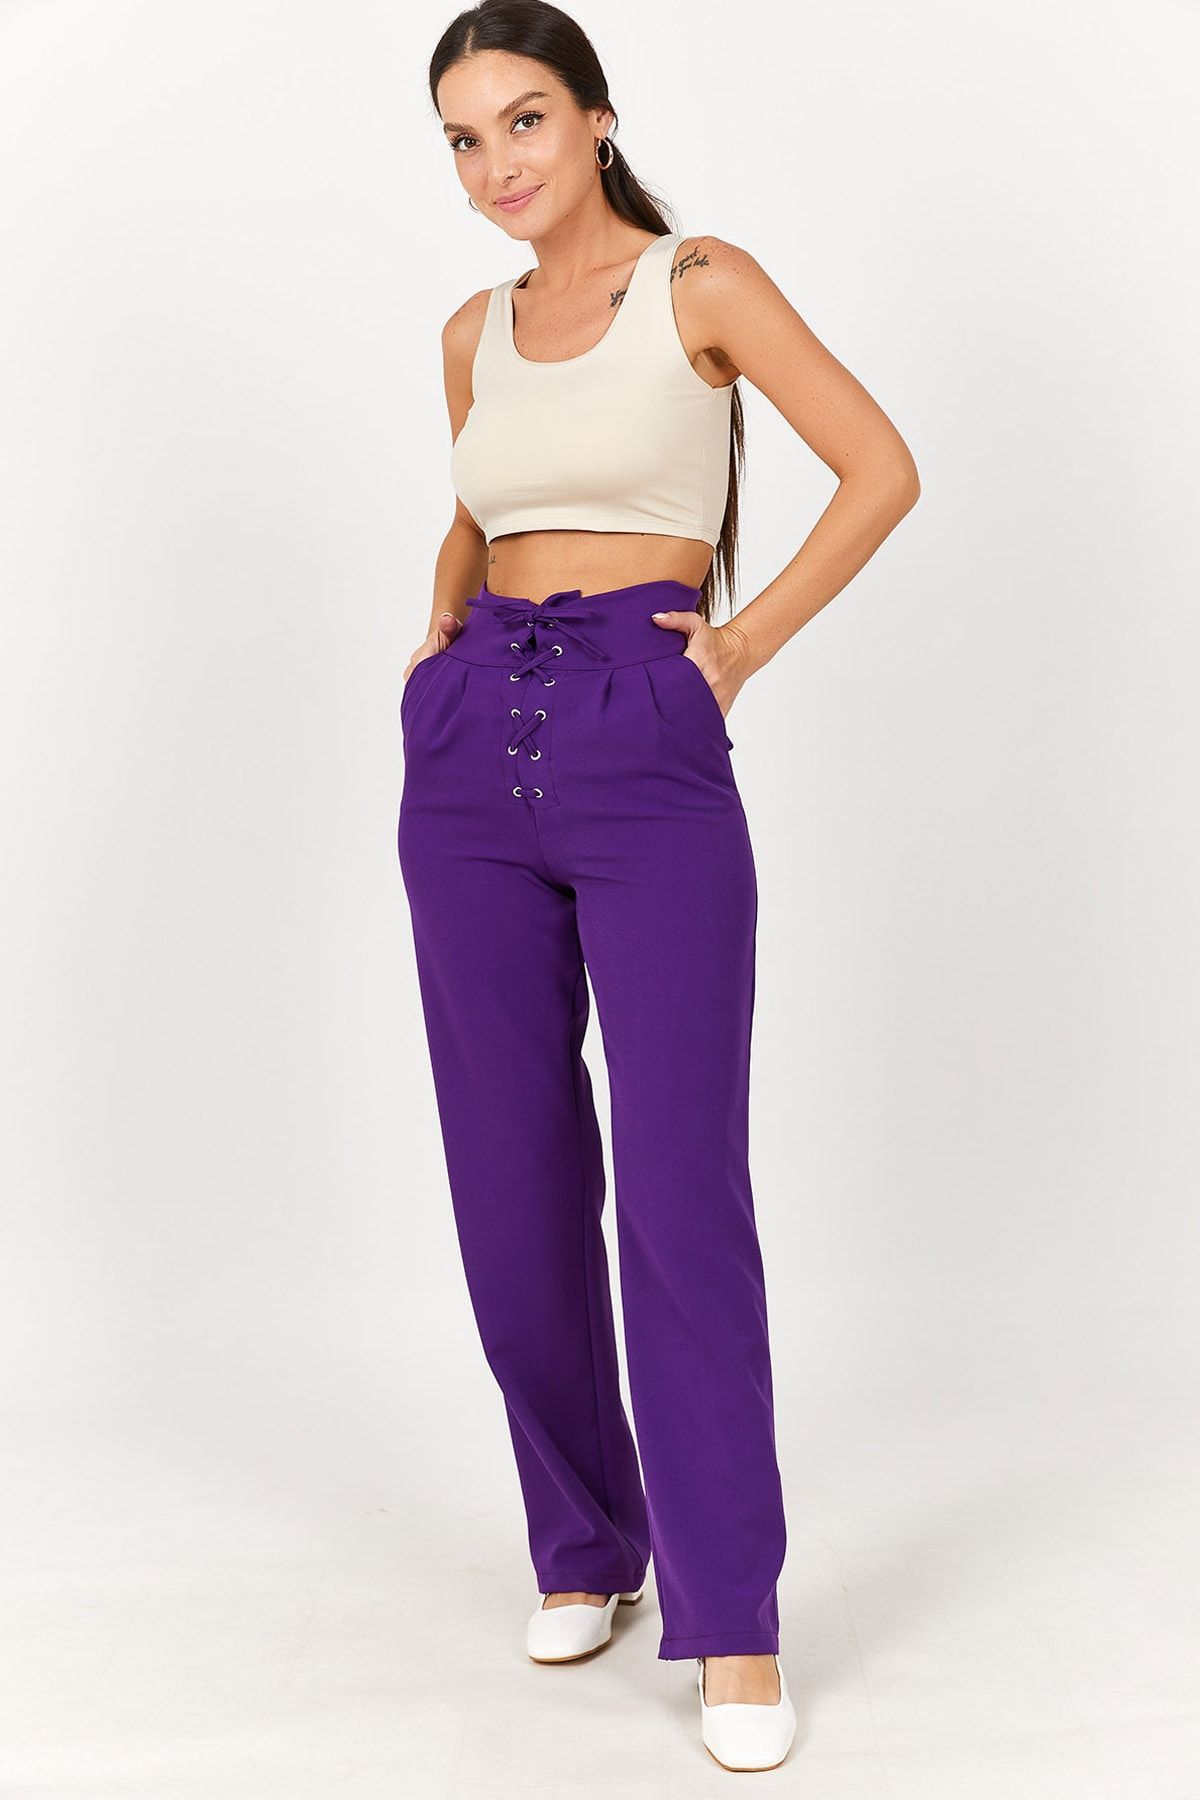 wide straight slacks(purple)